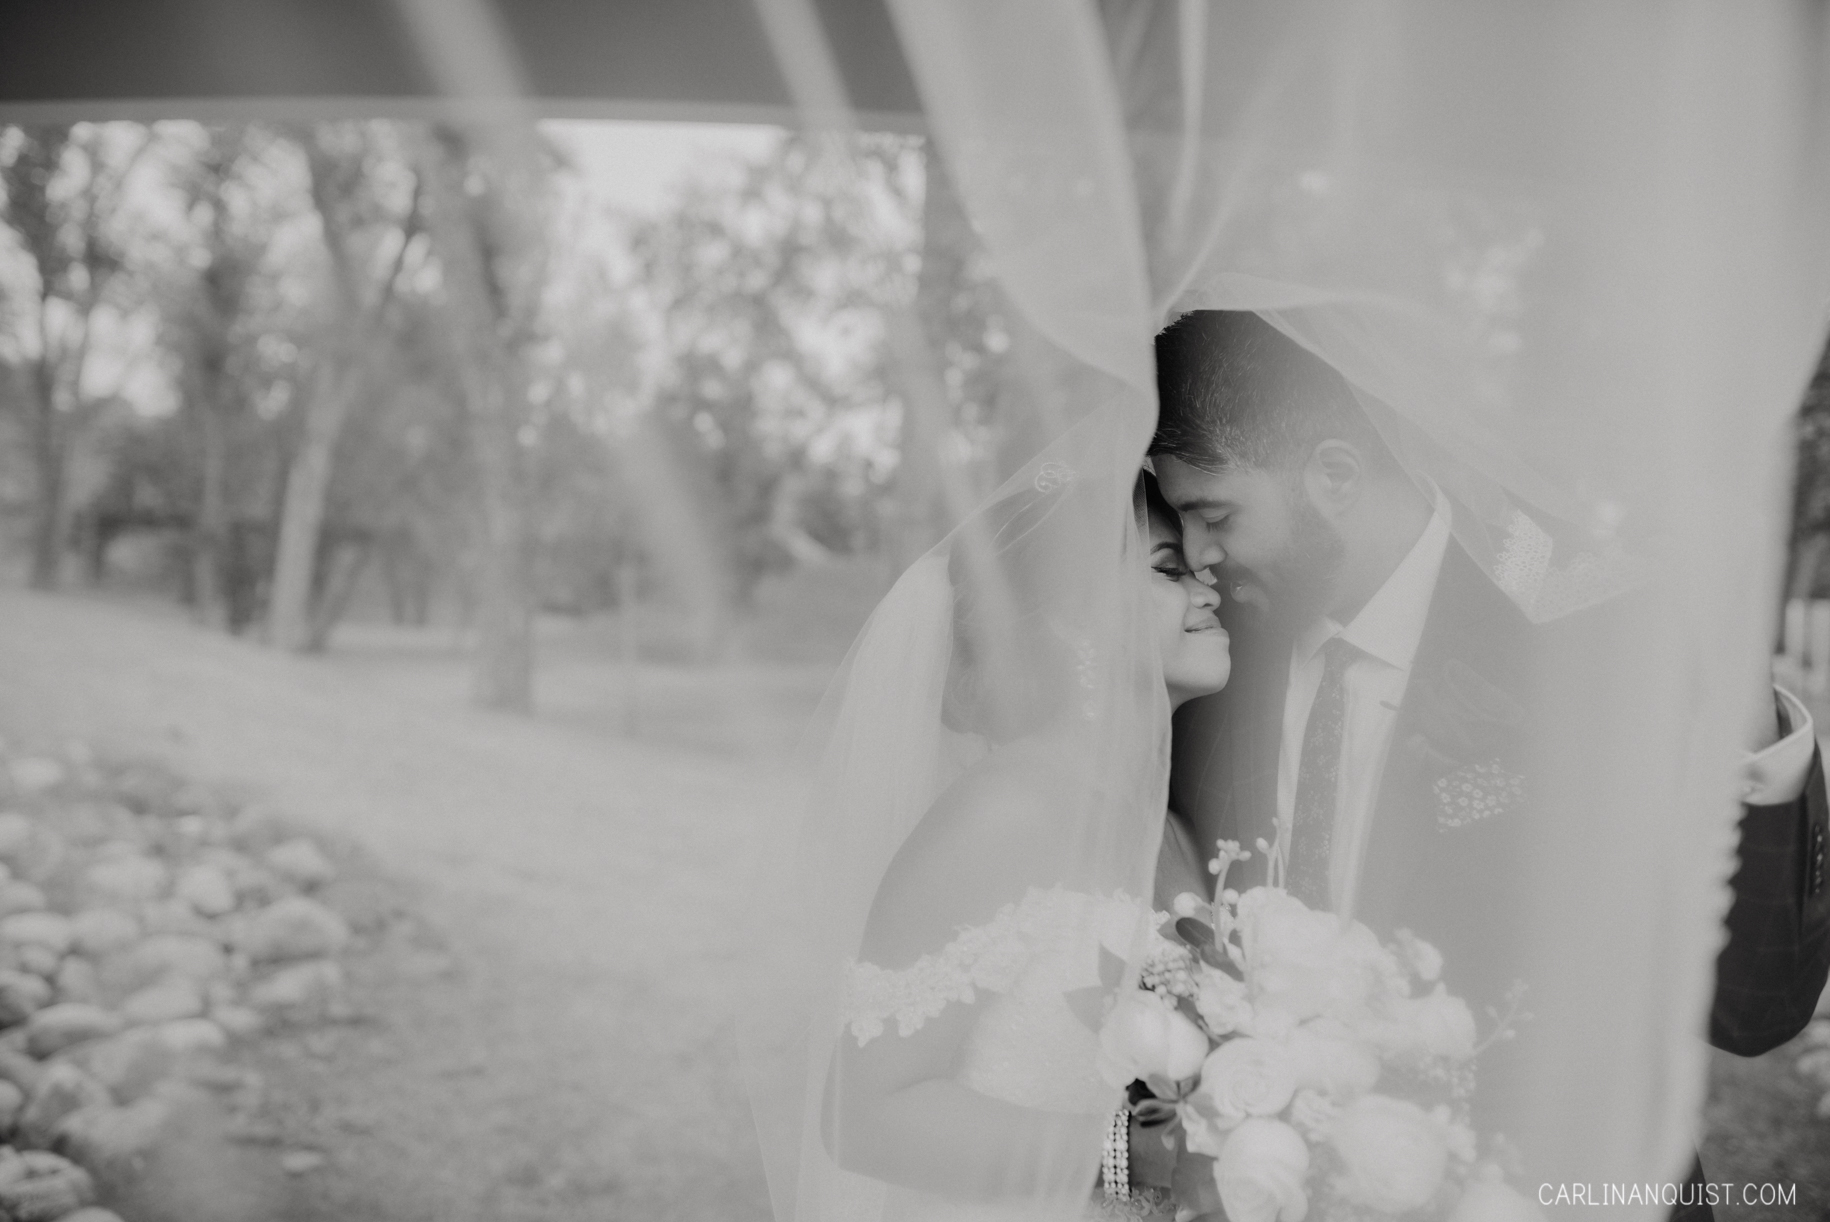 Bride & Groom Portraits - Catholic/Sikh Wedding Photographer Calgary